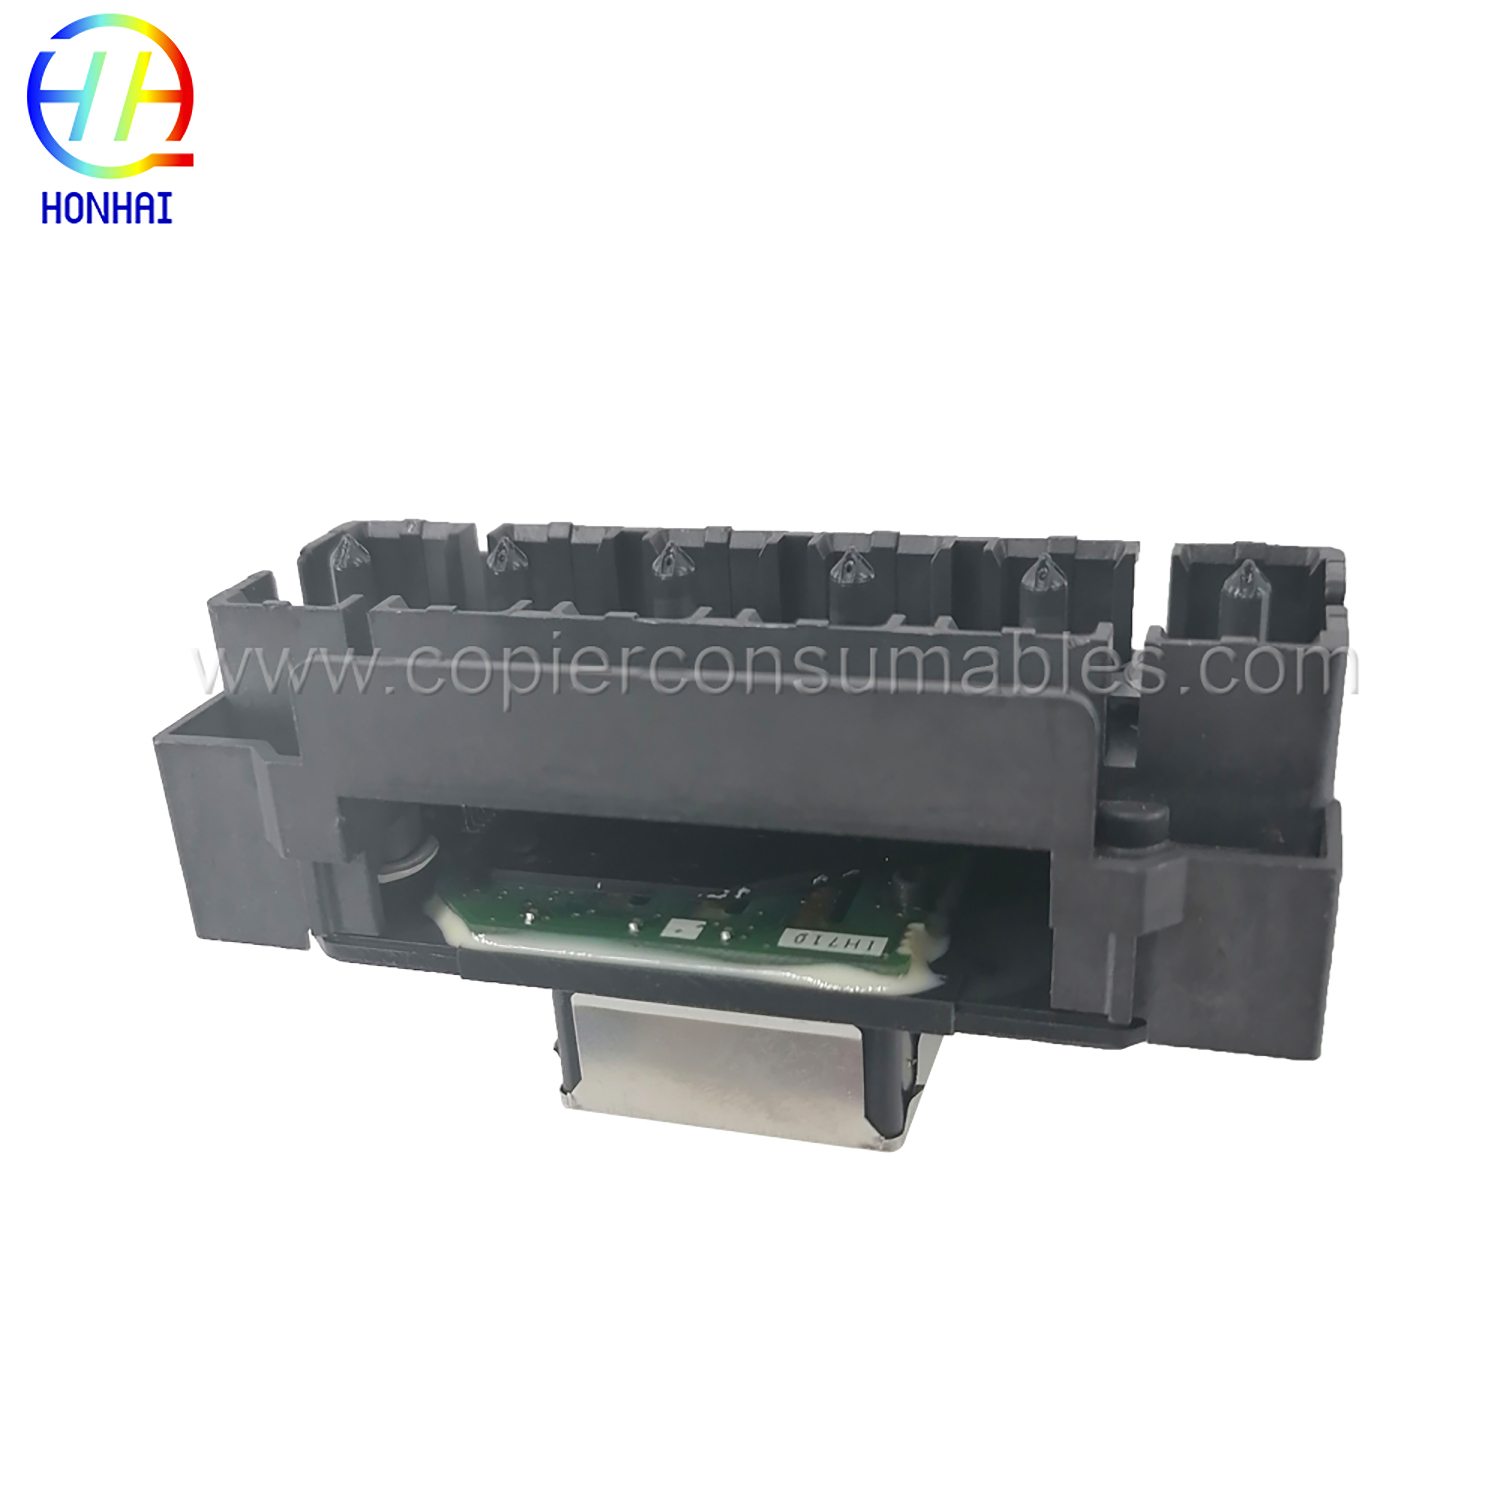 Печатающая головка, совместимая с Epson L1800 1410 1430 1500 Вт (6)